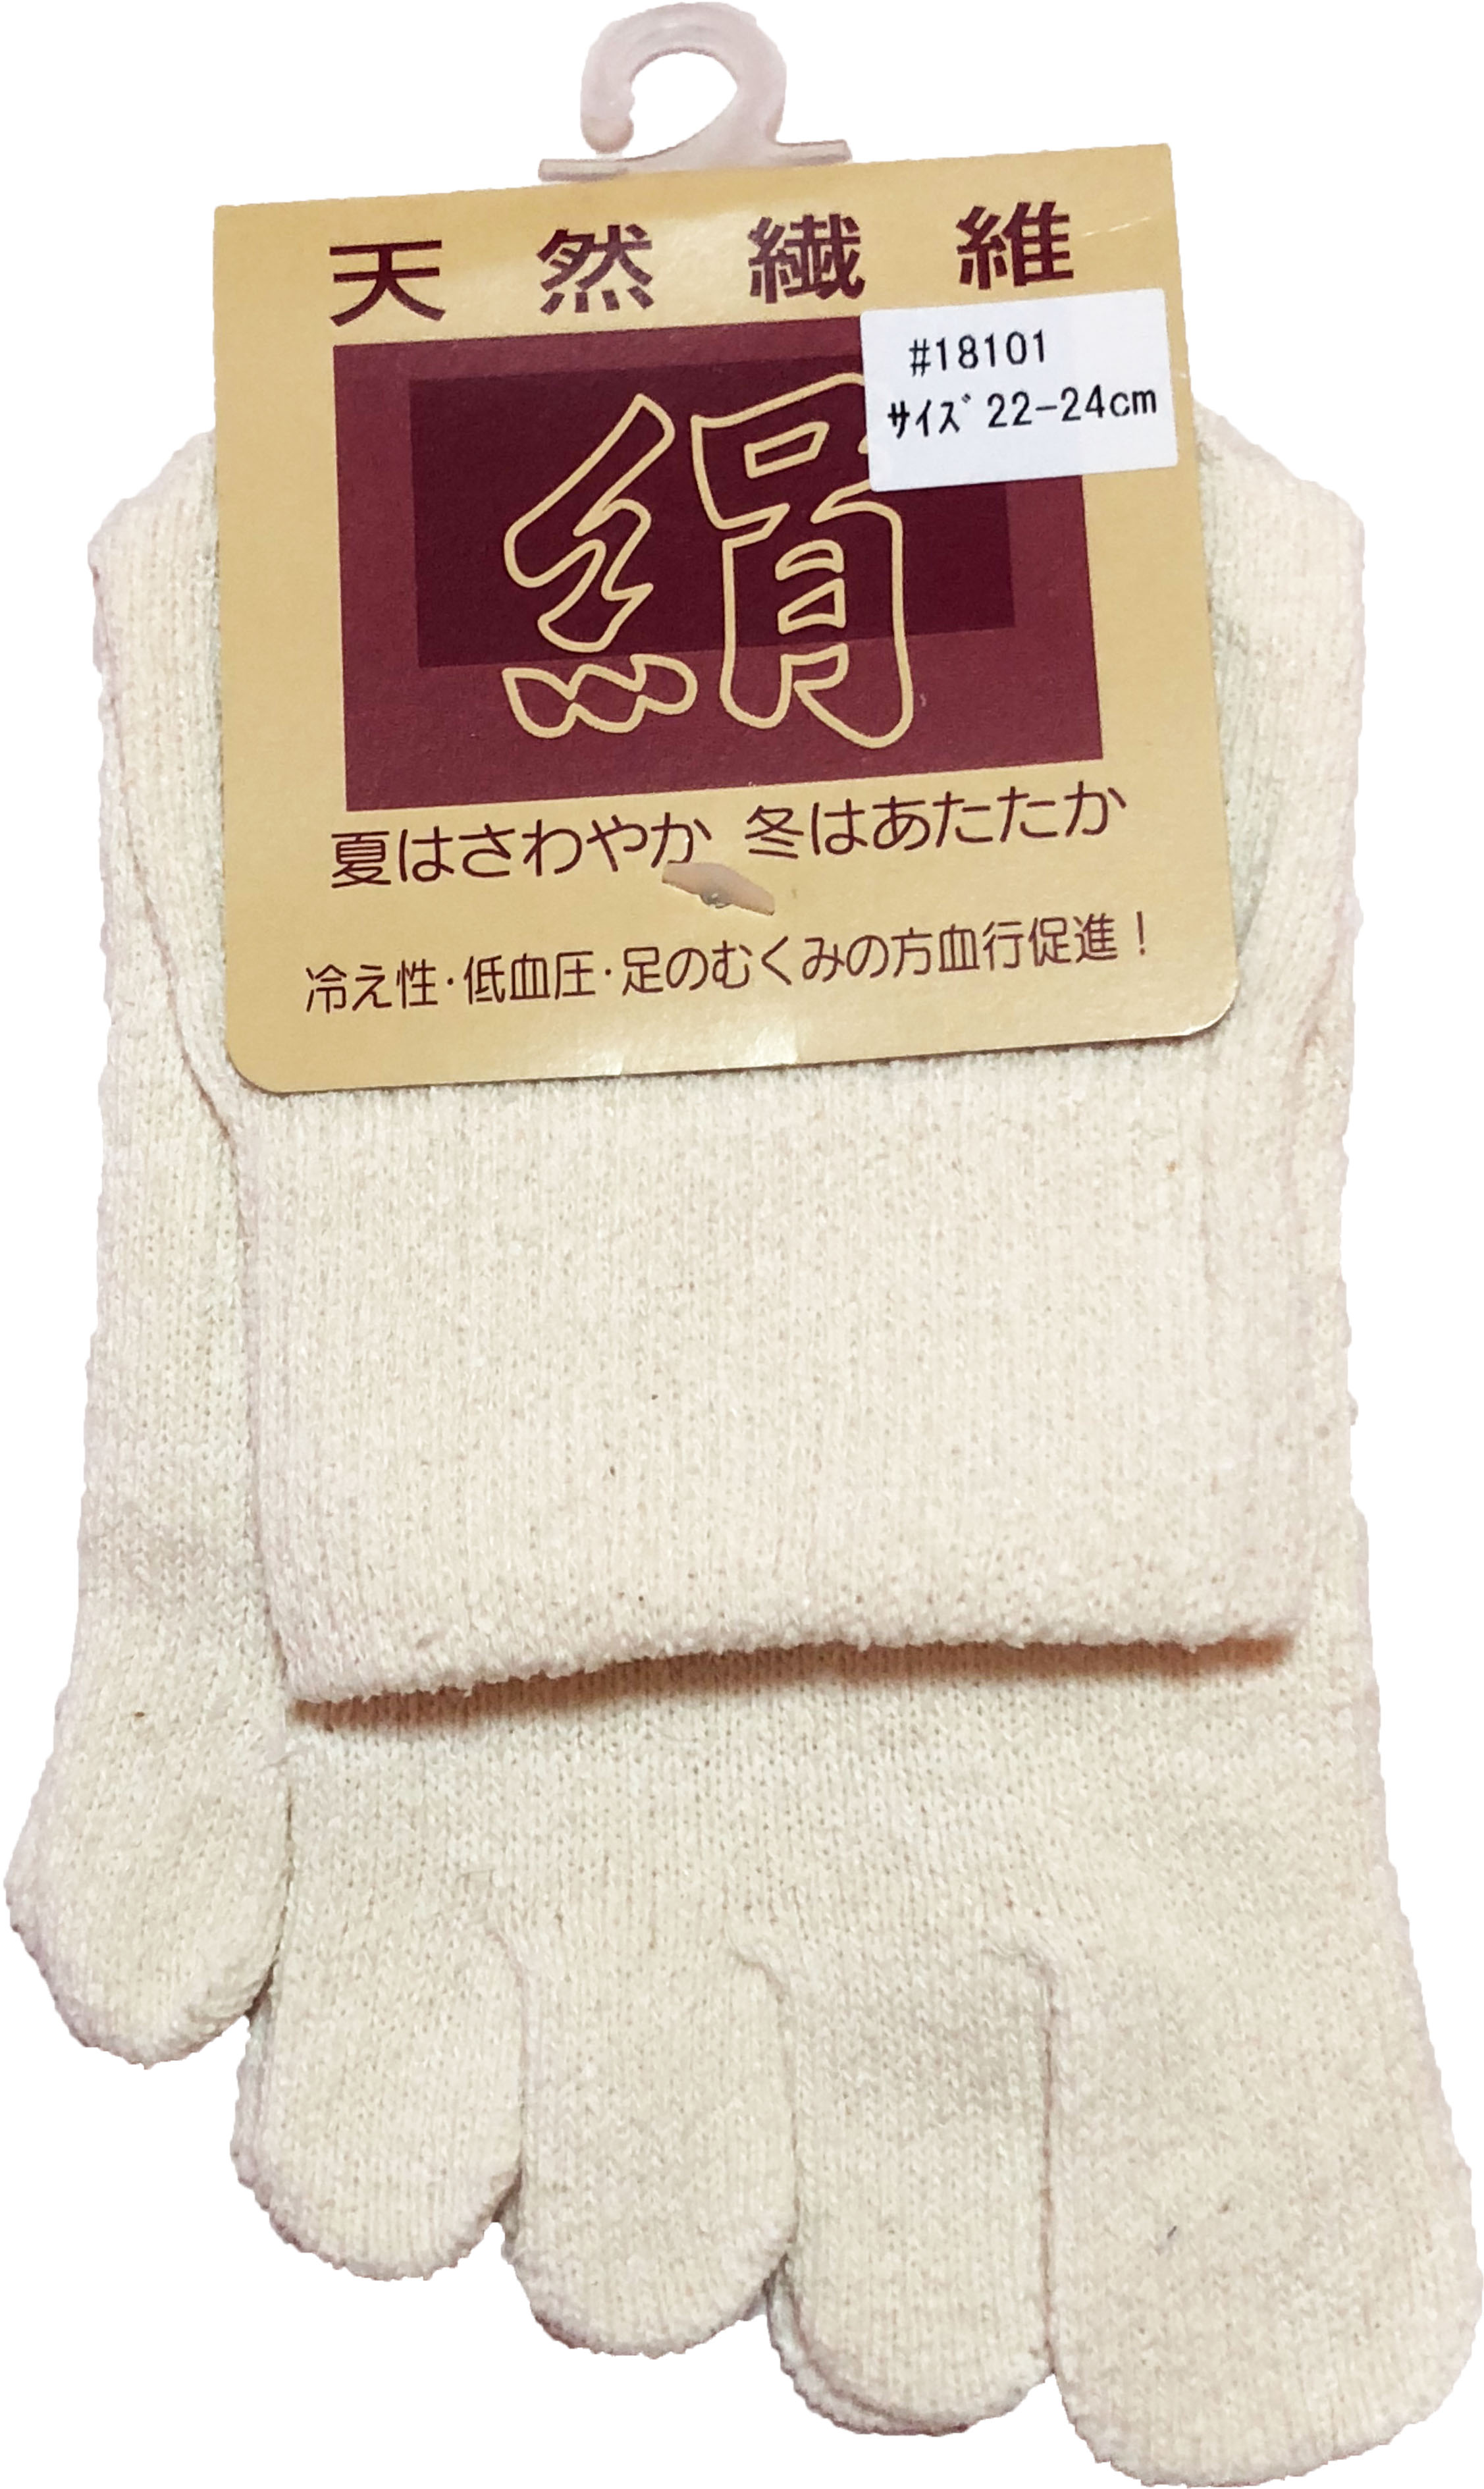 介護用品　日本製　婦人　シルク5本指靴下の写真です。